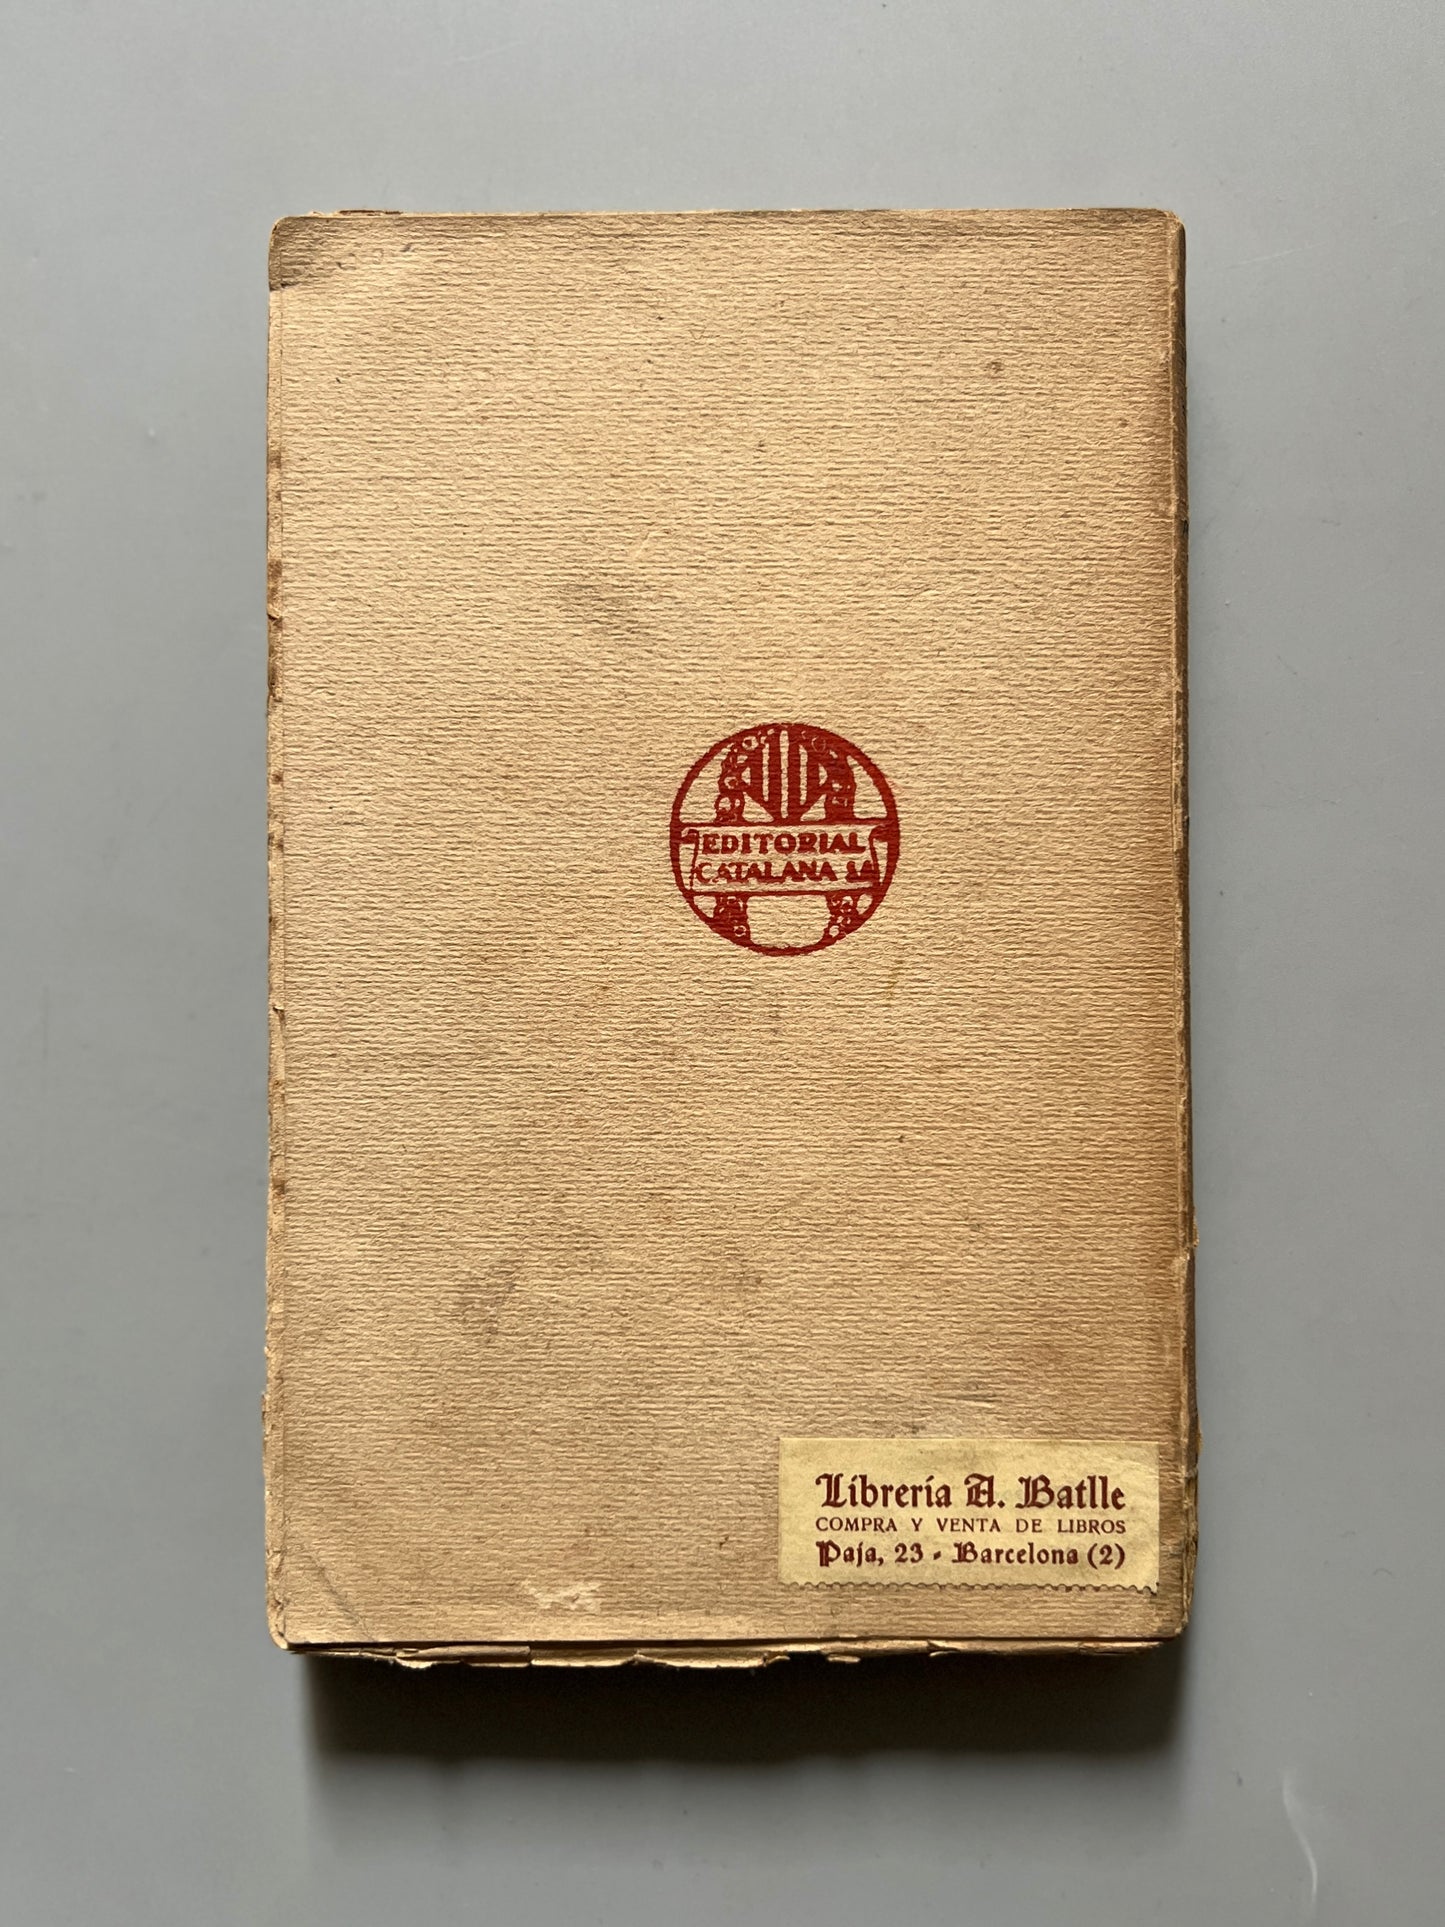 Contes d'Andersen - Editorial Catalana, 1918